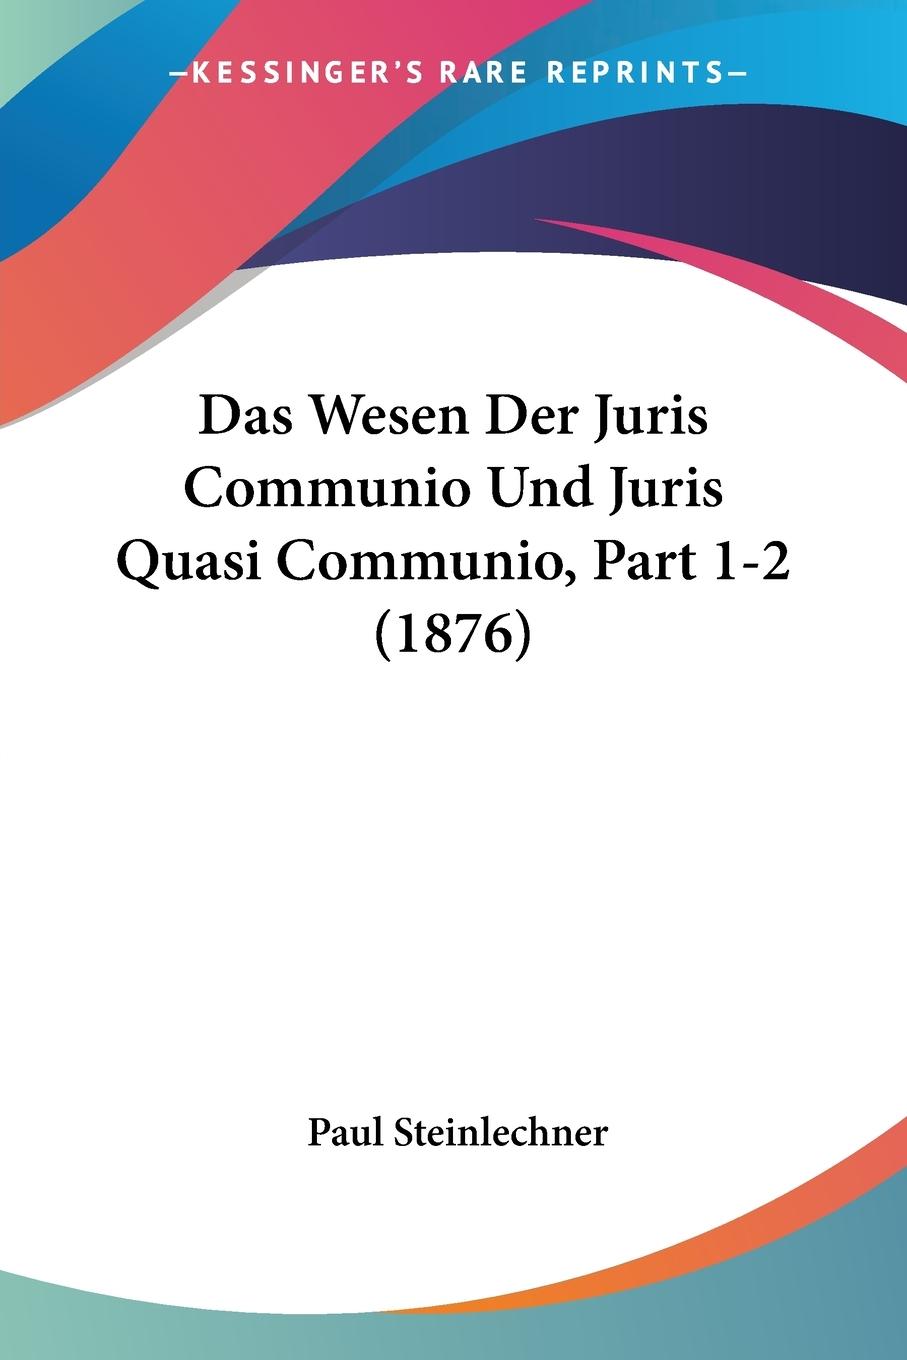 Das Wesen Der Juris Communio Und Juris Quasi Communio, Part 1-2 (1876) - Steinlechner, Paul